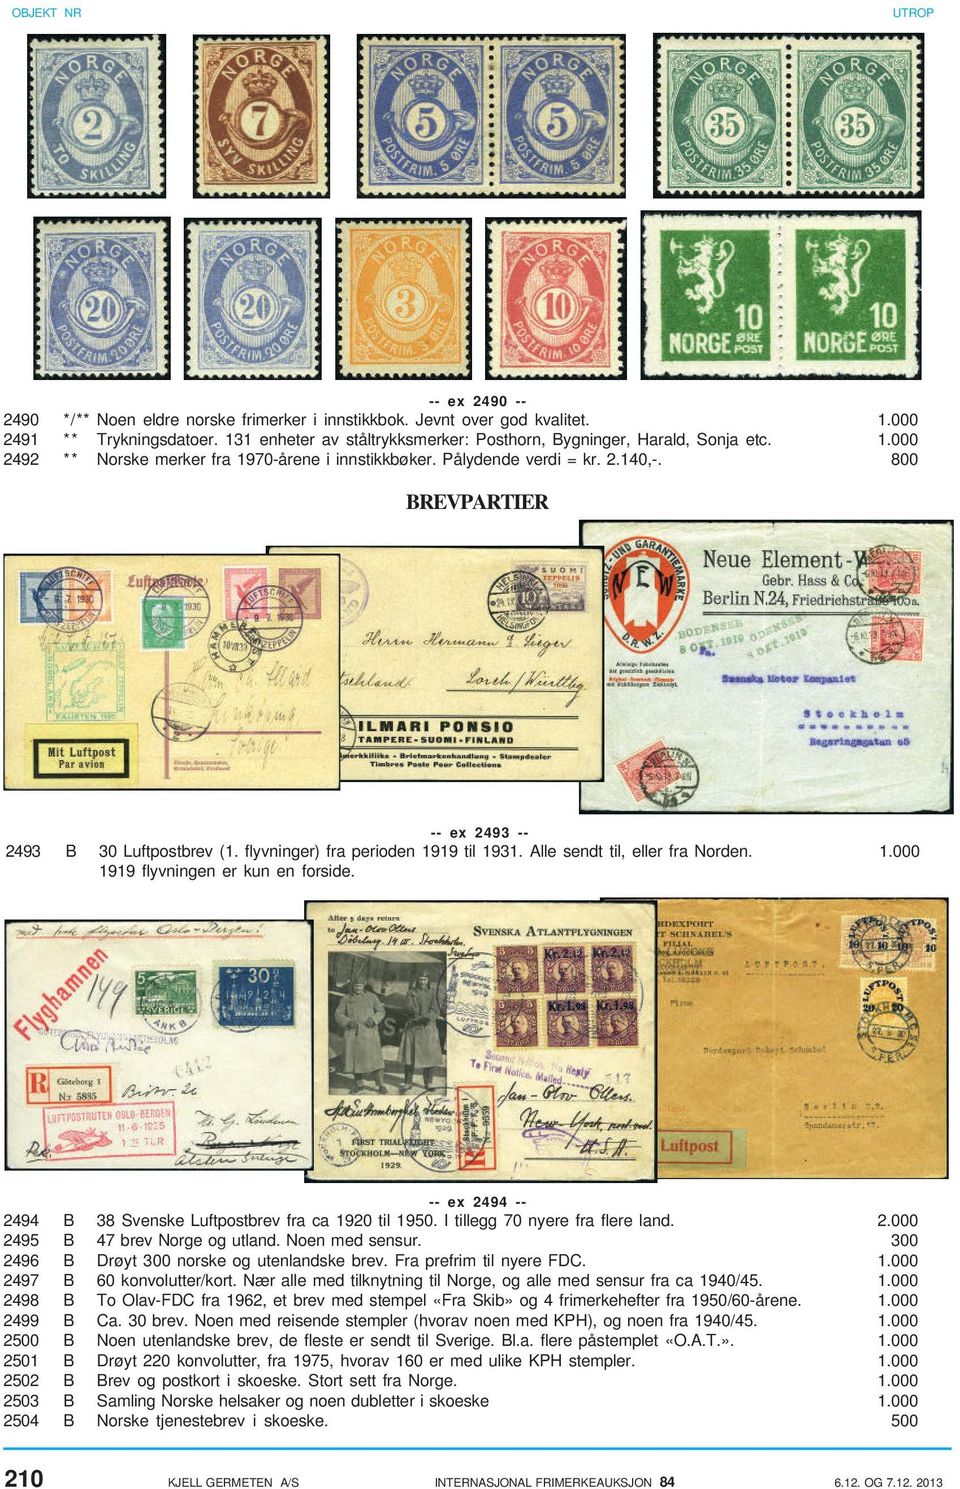 -- ex 2494 -- 2494 B 38 Svenske Luftpostbrev fra ca 1920 til 1950. I tillegg 70 nyere fra flere land. 2.000 2495 B 47 brev Norge og utland. Noen med sensur.